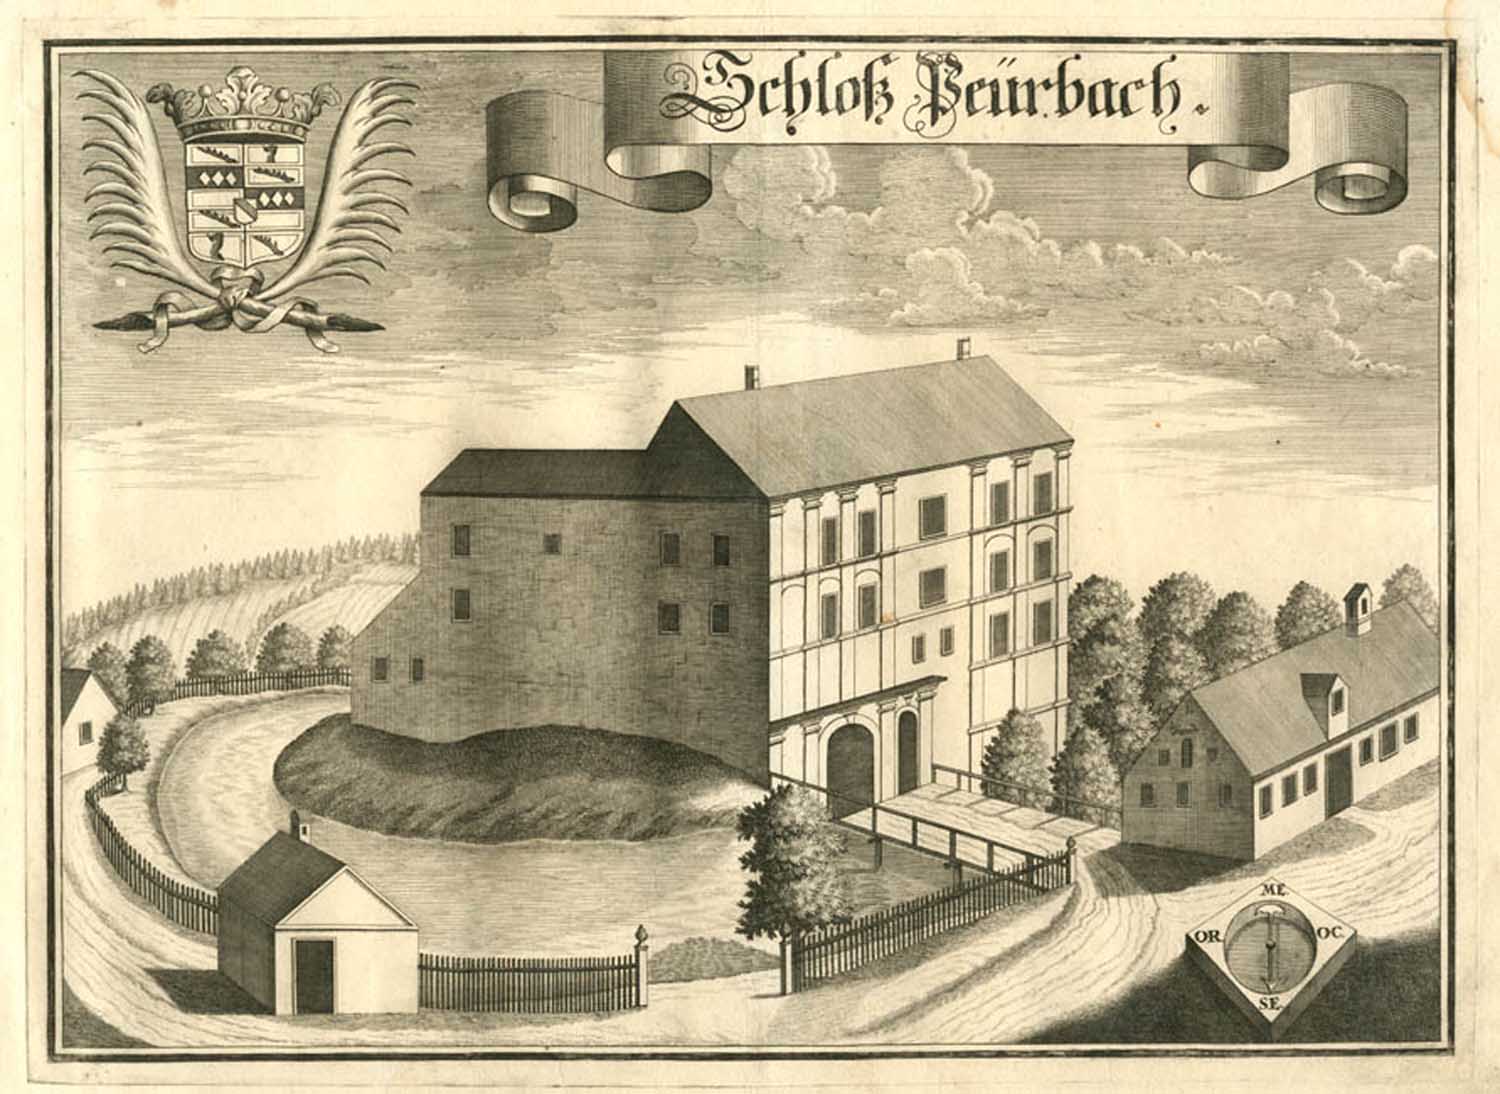 Schloss Peuerbach
Das ländliche Baudenkmal hat eine lange Geschichte. Schon Michael Wening hat es Anfang des 18. Jahrhunderts in einem Stich festgehalten.